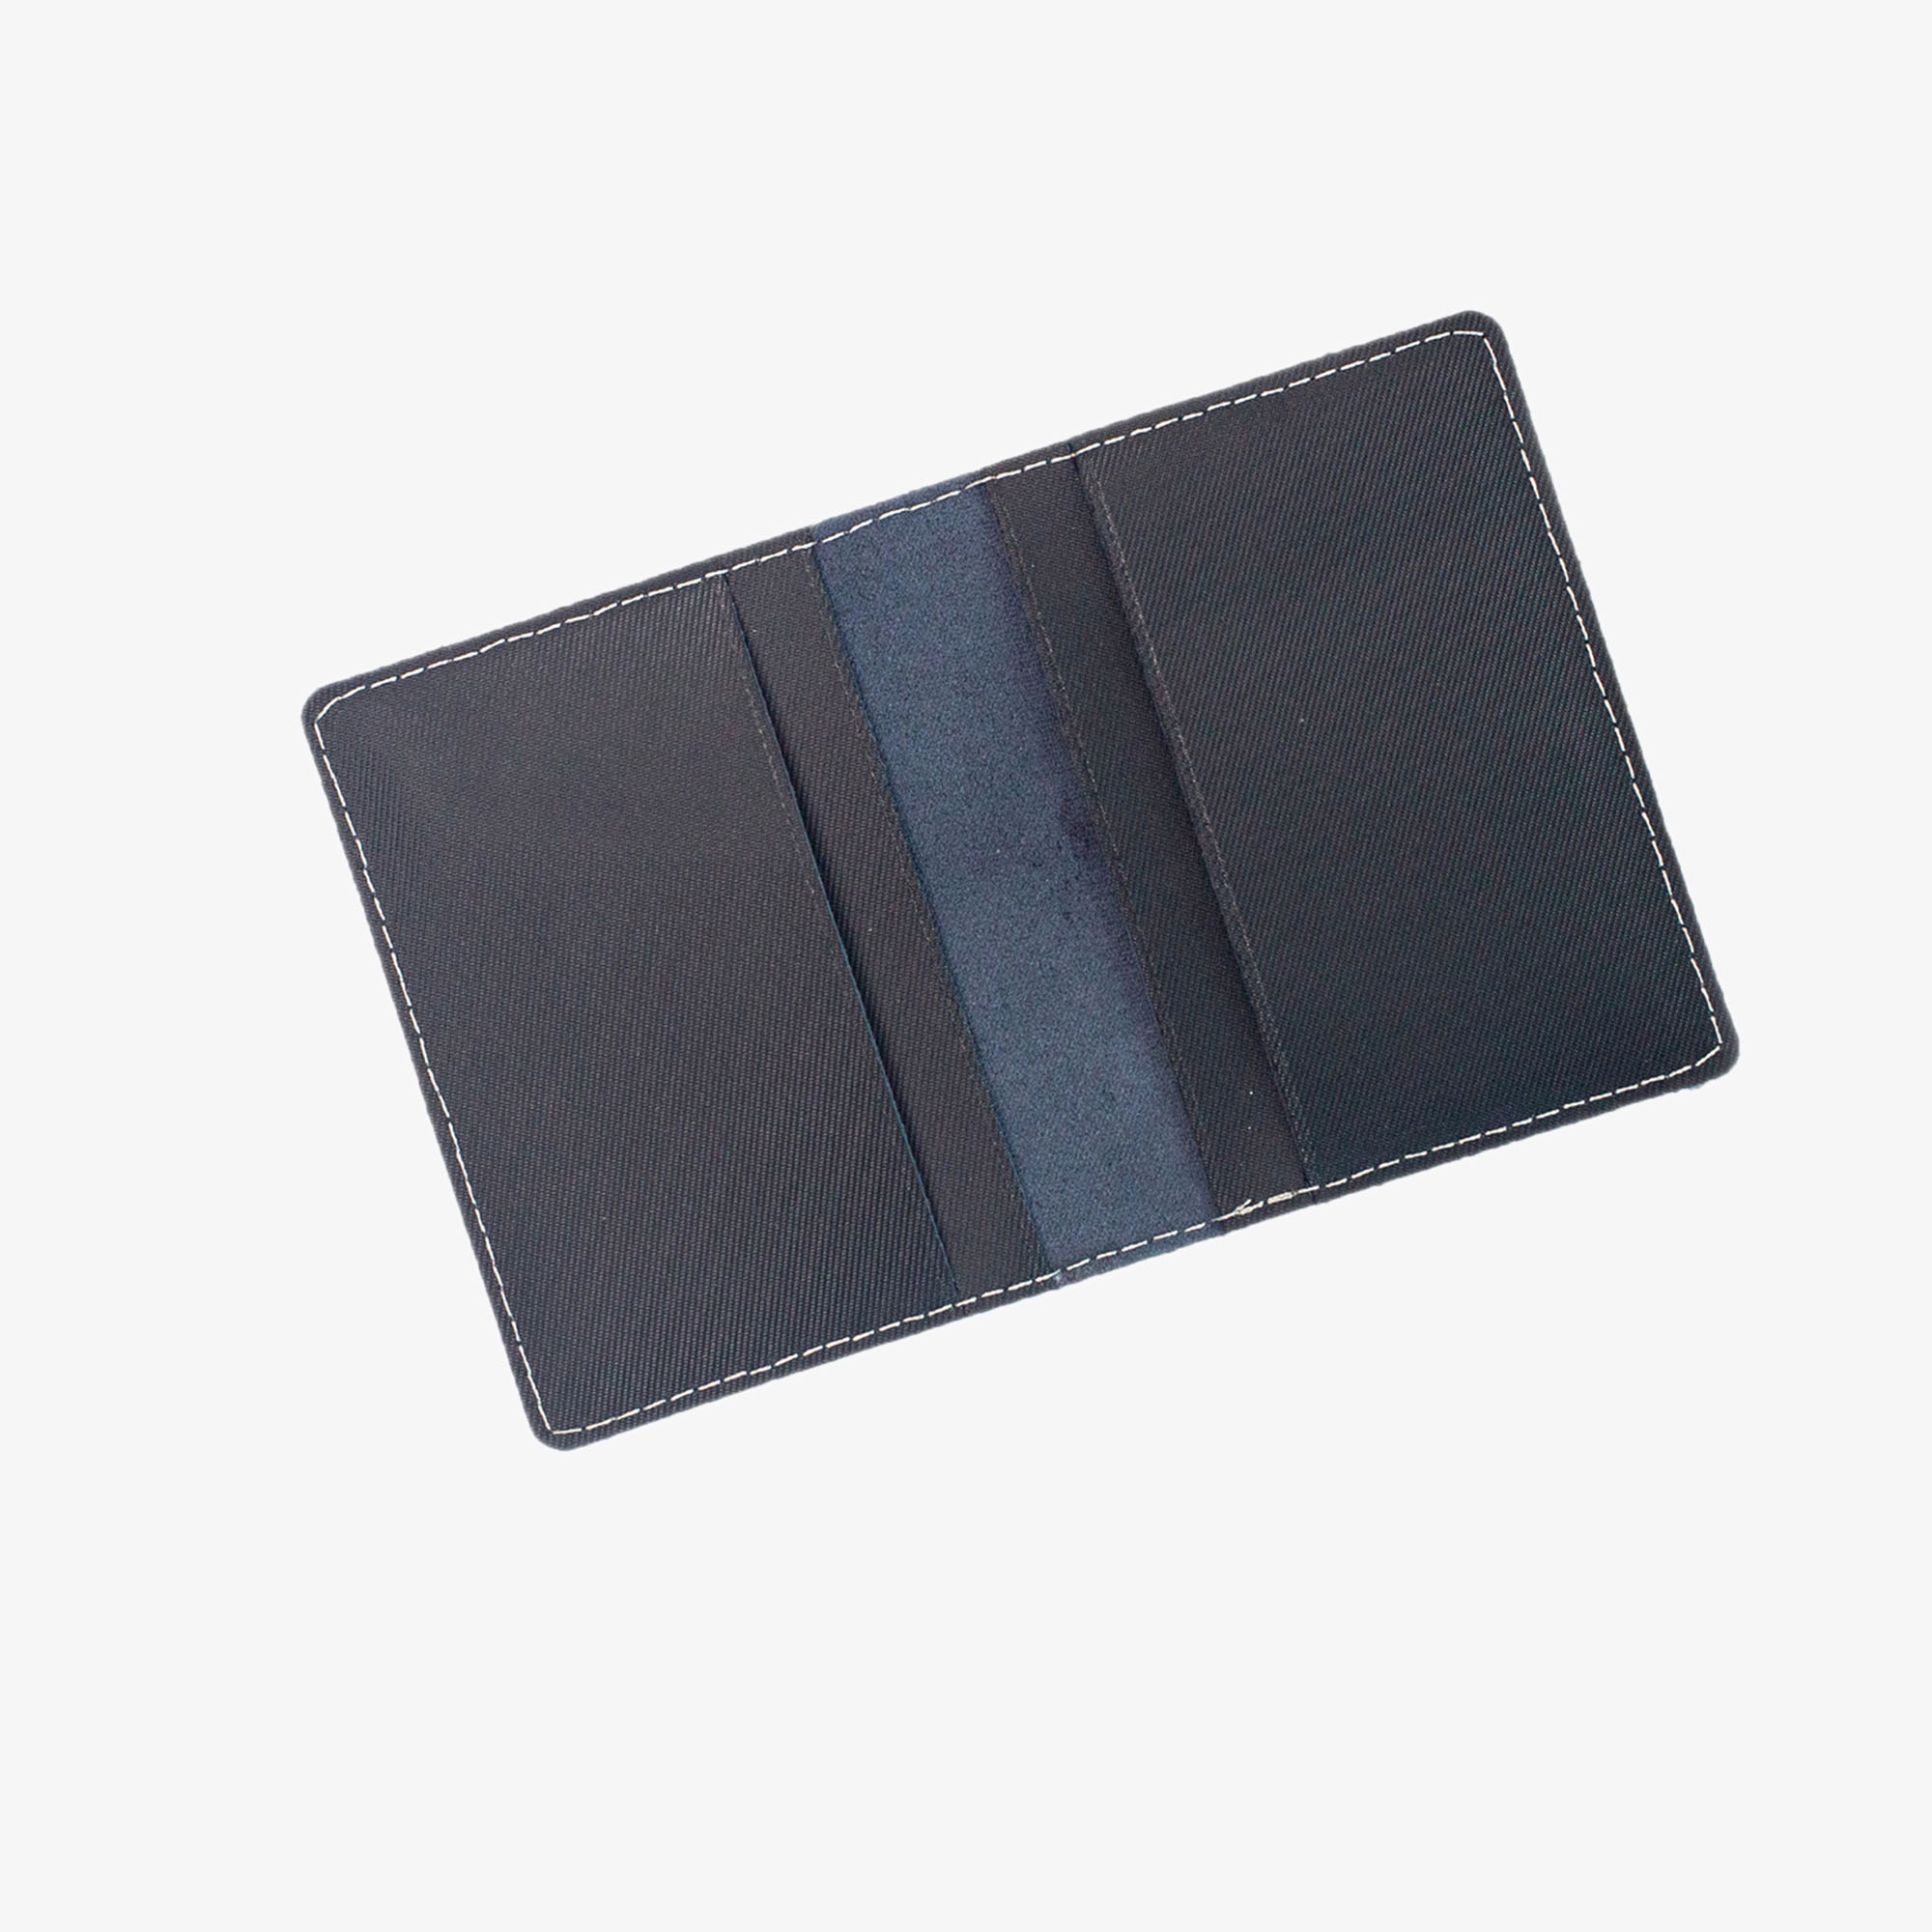 Hình ảnh Ví namecard da bò V131, ví đựng thẻ card holder da thật nhỏ gọn, thương hiệu Bụi leather chuyên đồ da thật